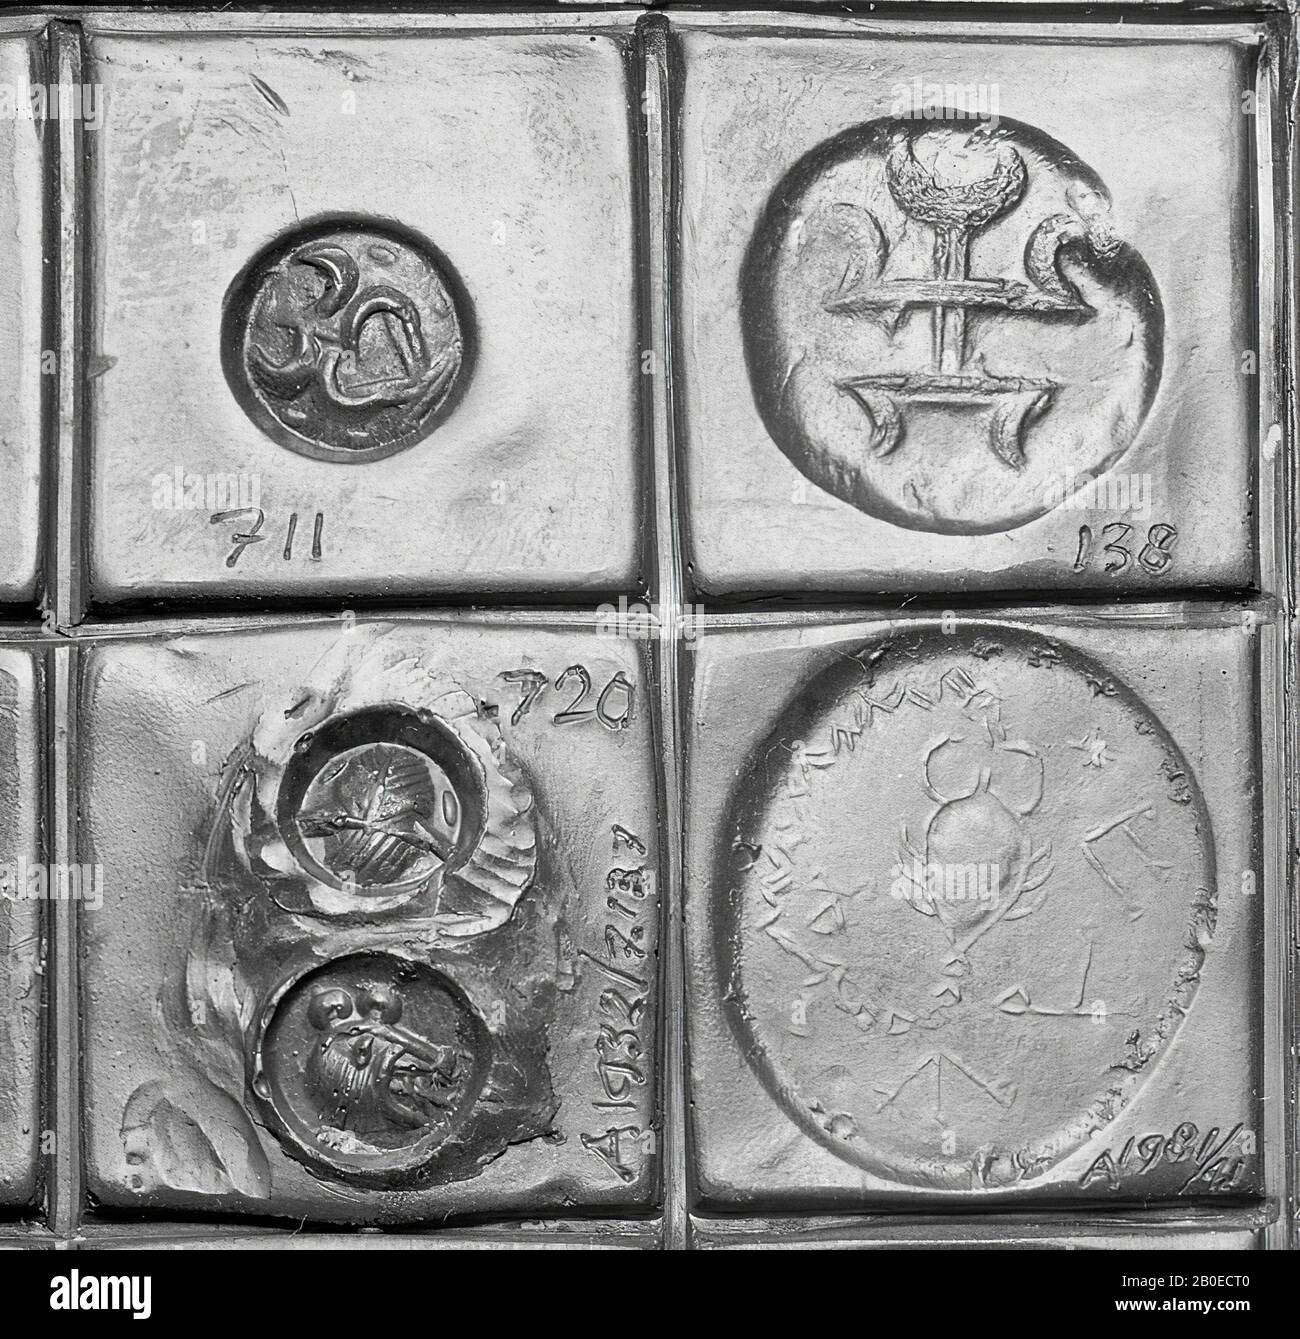 Un francobollo in pietra con una rappresentazione schematica di un volto umano, Sigillo, pietra, ematite, L 0,8 cm, D 0,8 cm, Iran Foto Stock